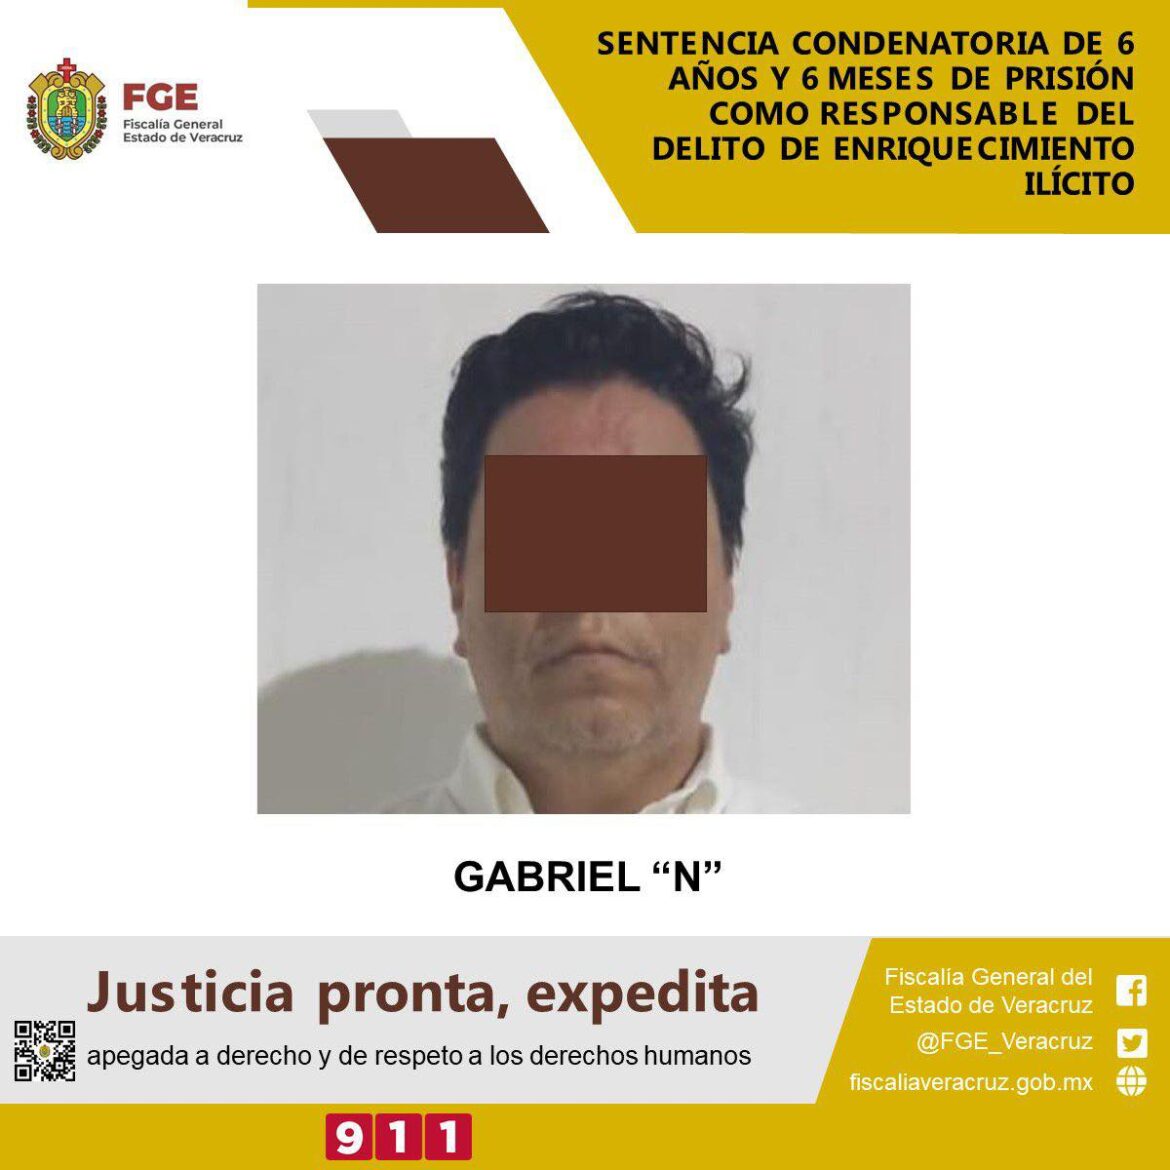 Ratifican sentencia condenatoria contra Gabriel «N», ex secretario del Trabajo de Javier Duarte